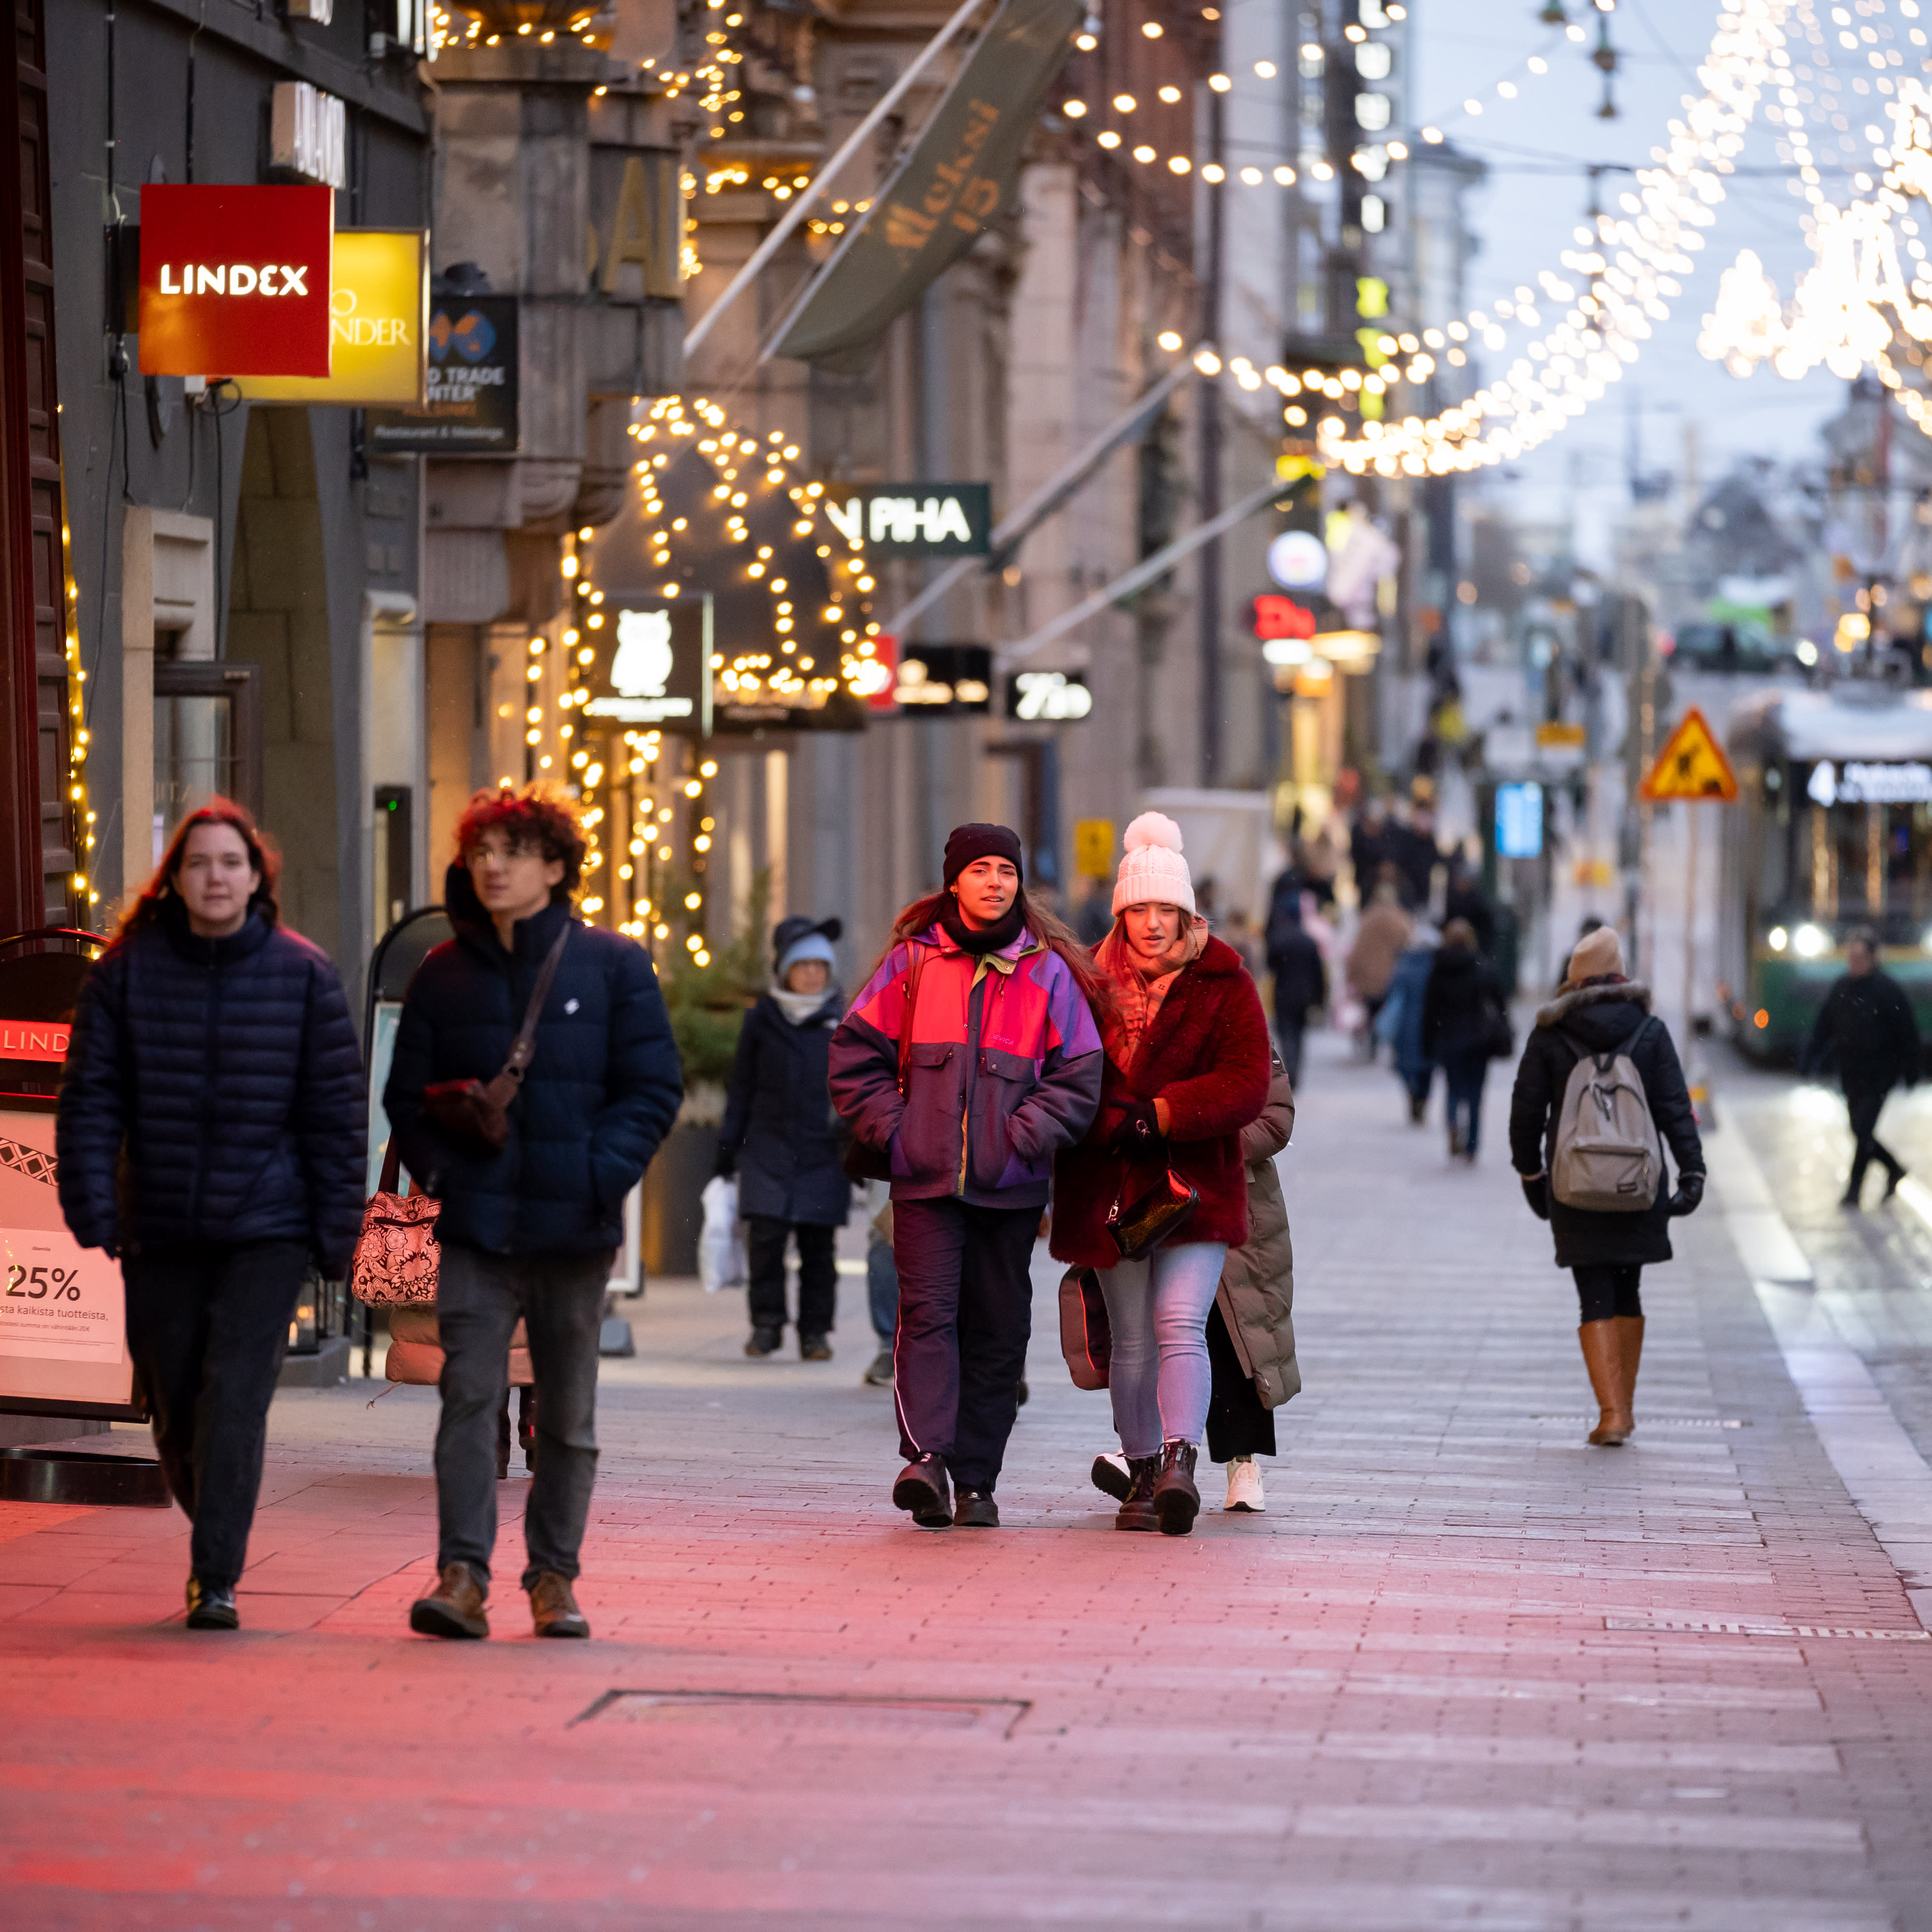 フィンランドの消費者信頼感は安定しているが、依然として弱い